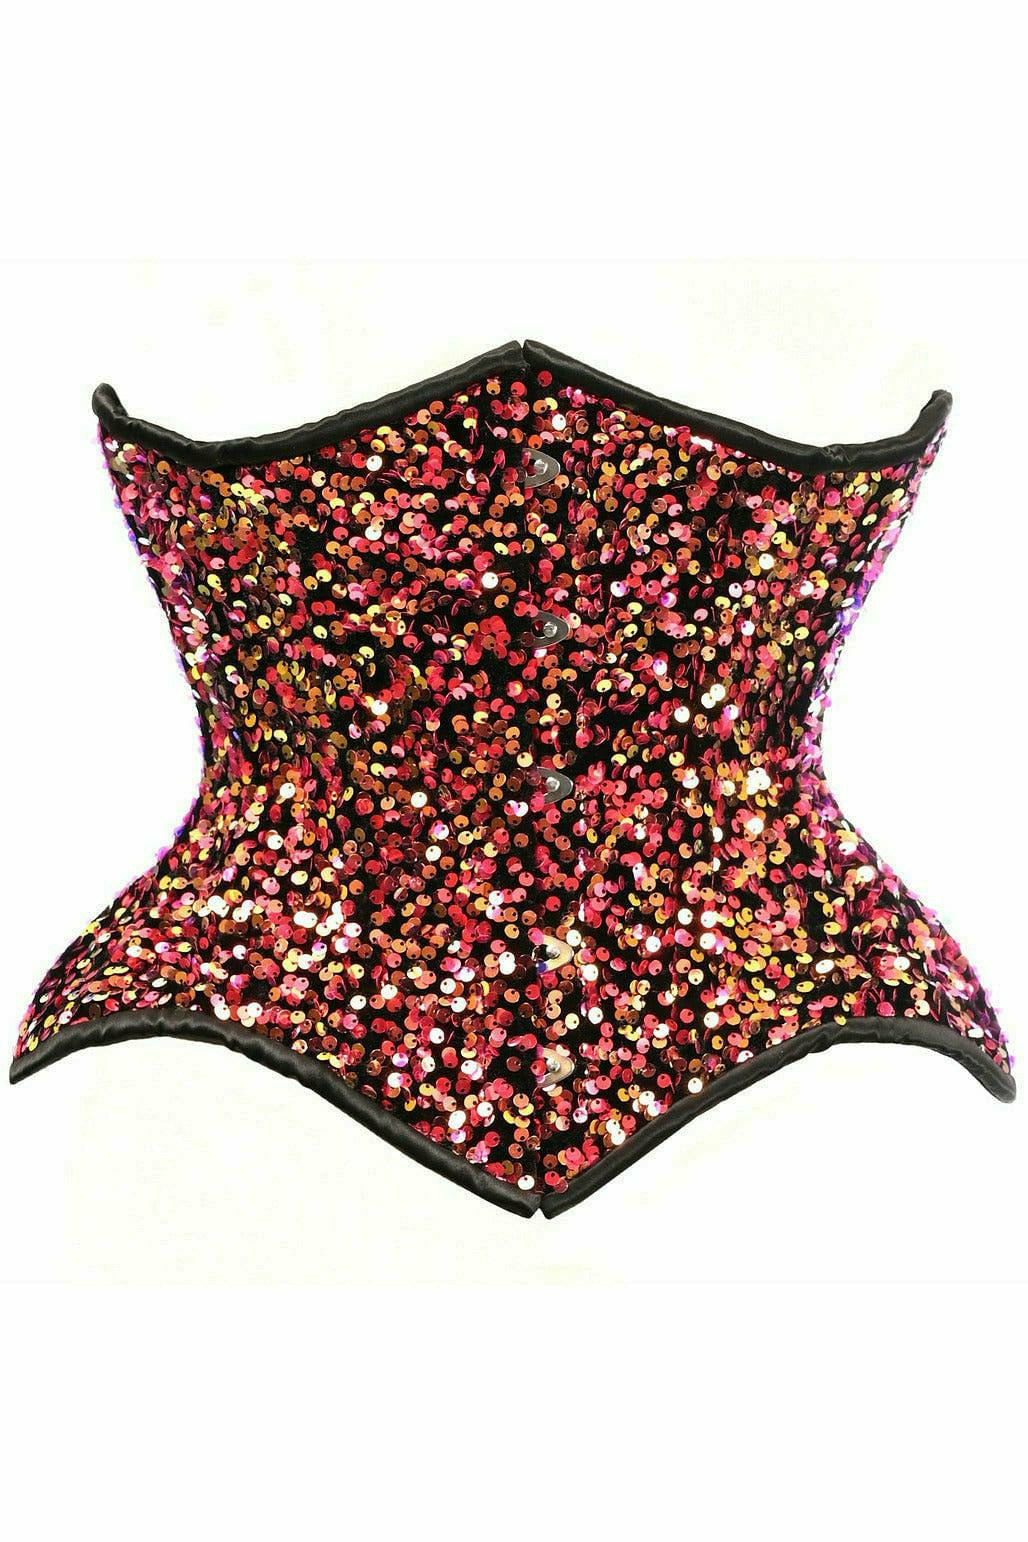 Daisy Corsets Top Drawer Multi Pink Sequin Curvy Cut Waist Cincher Corset